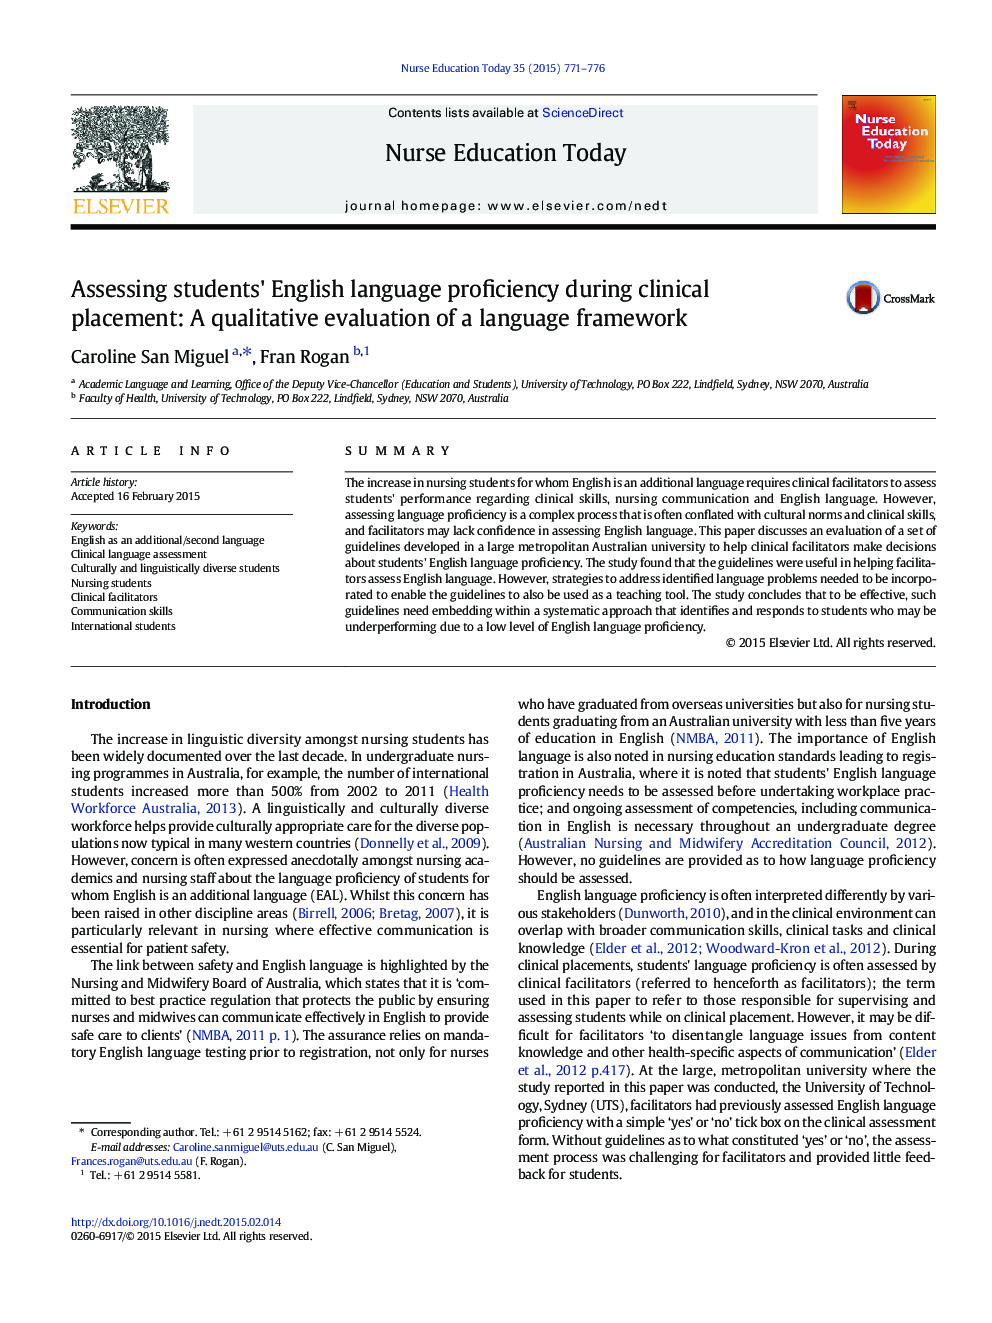 مهارت در بررسی زبان انگلیسی دانش آموزان در طول قرار دادن بالینی: ارزیابی کیفی یک چارچوب زبان